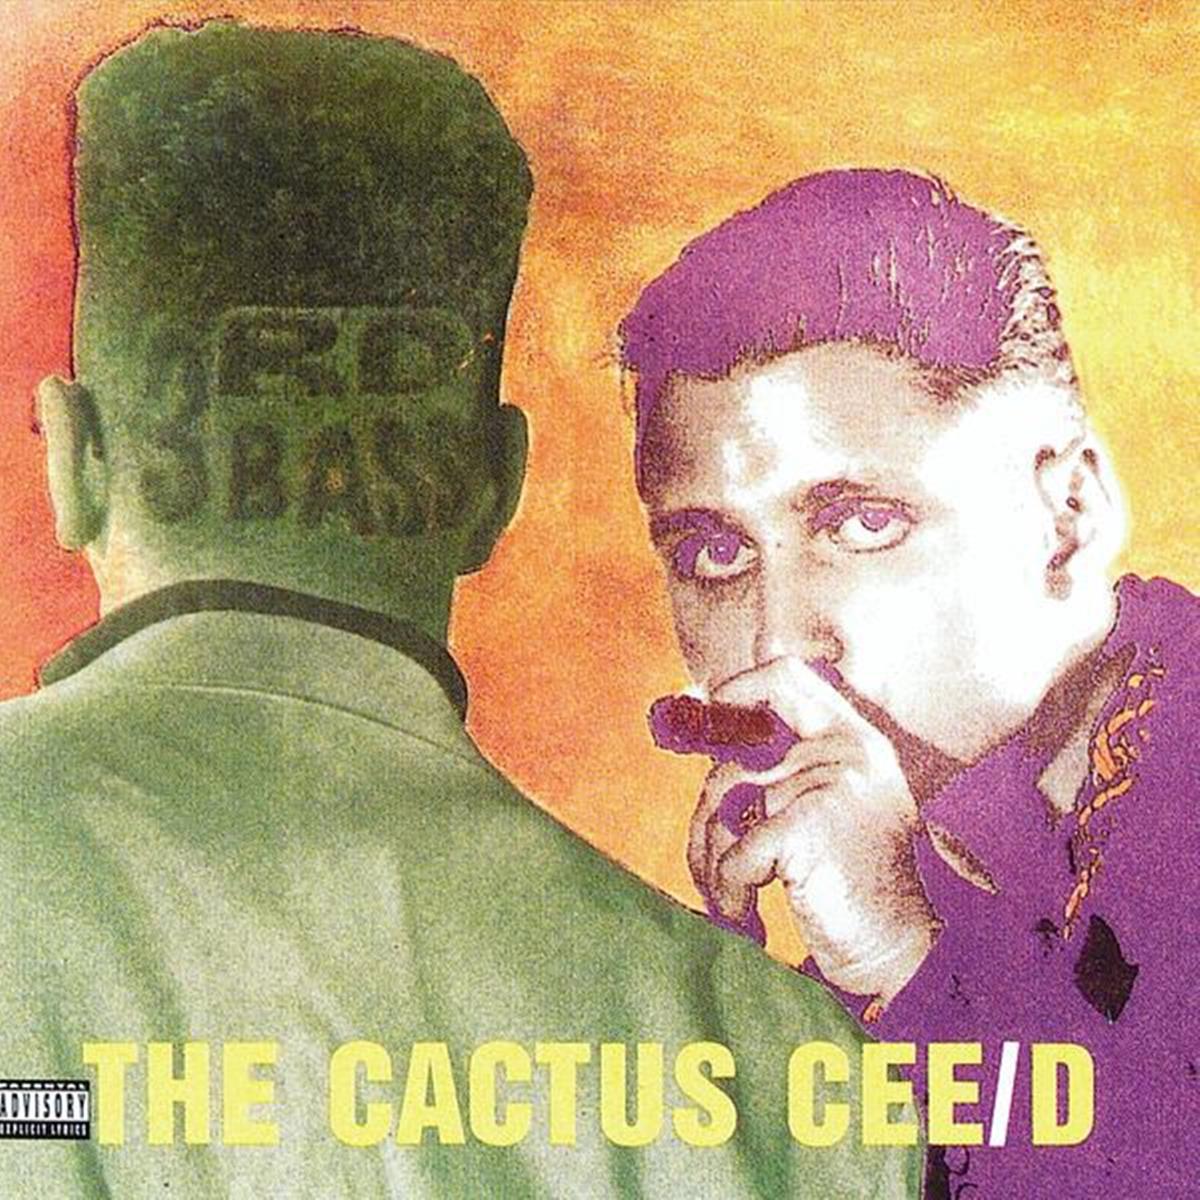 3d bass cactus album